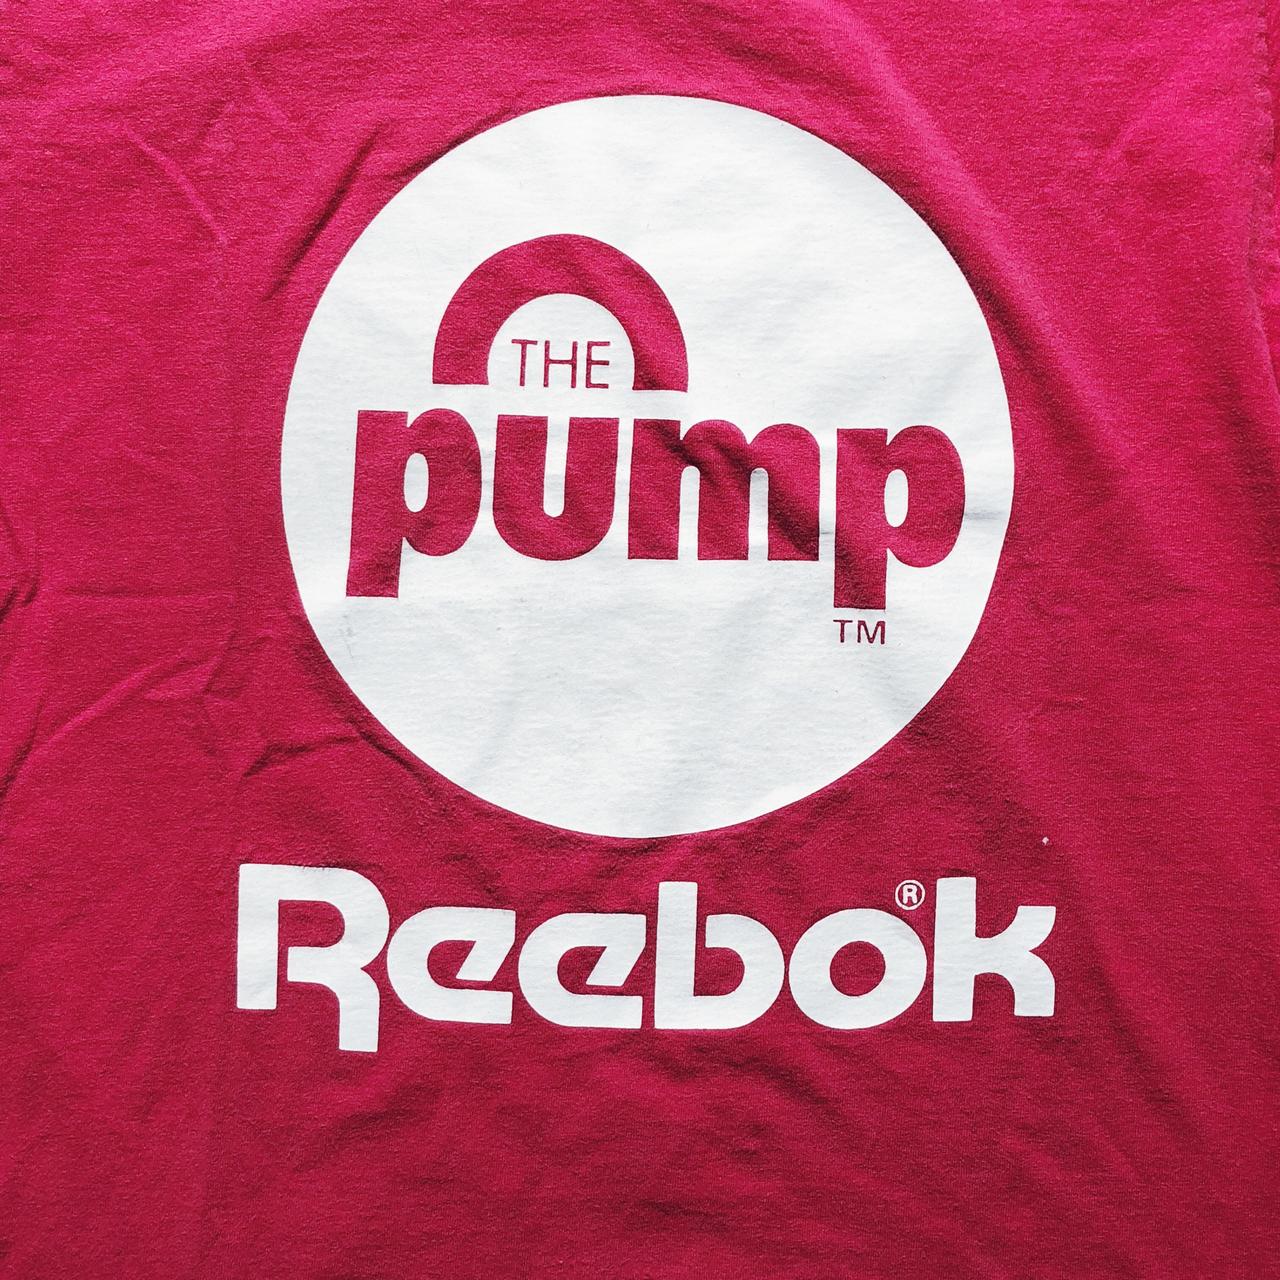 Vintage 80's Reebok pump shoes T-shirt. Size:... - Depop